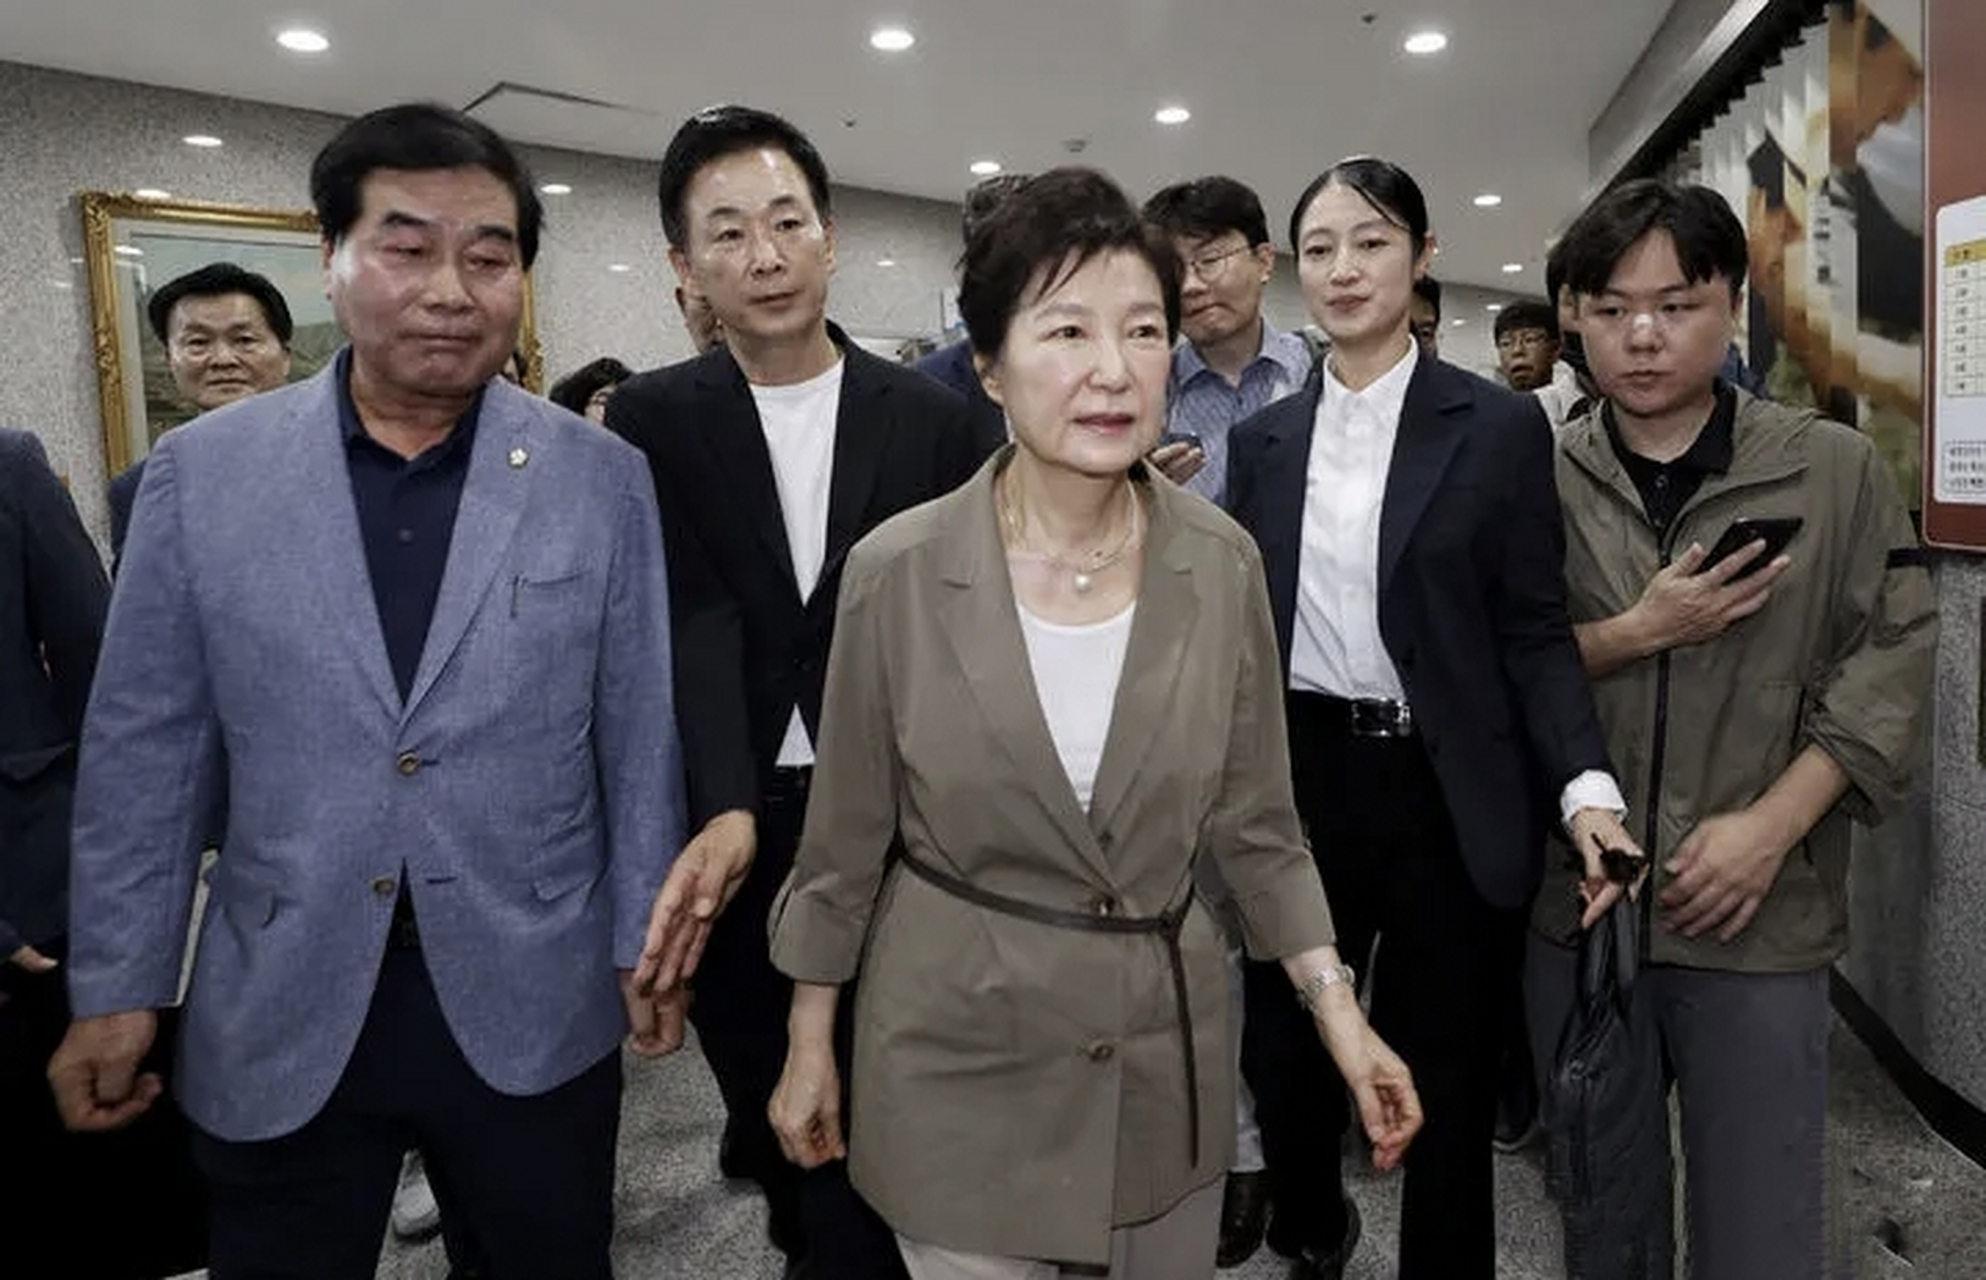 当地时间8月15日,韩国前总统朴槿惠罕见营业,她去了韩国前总统